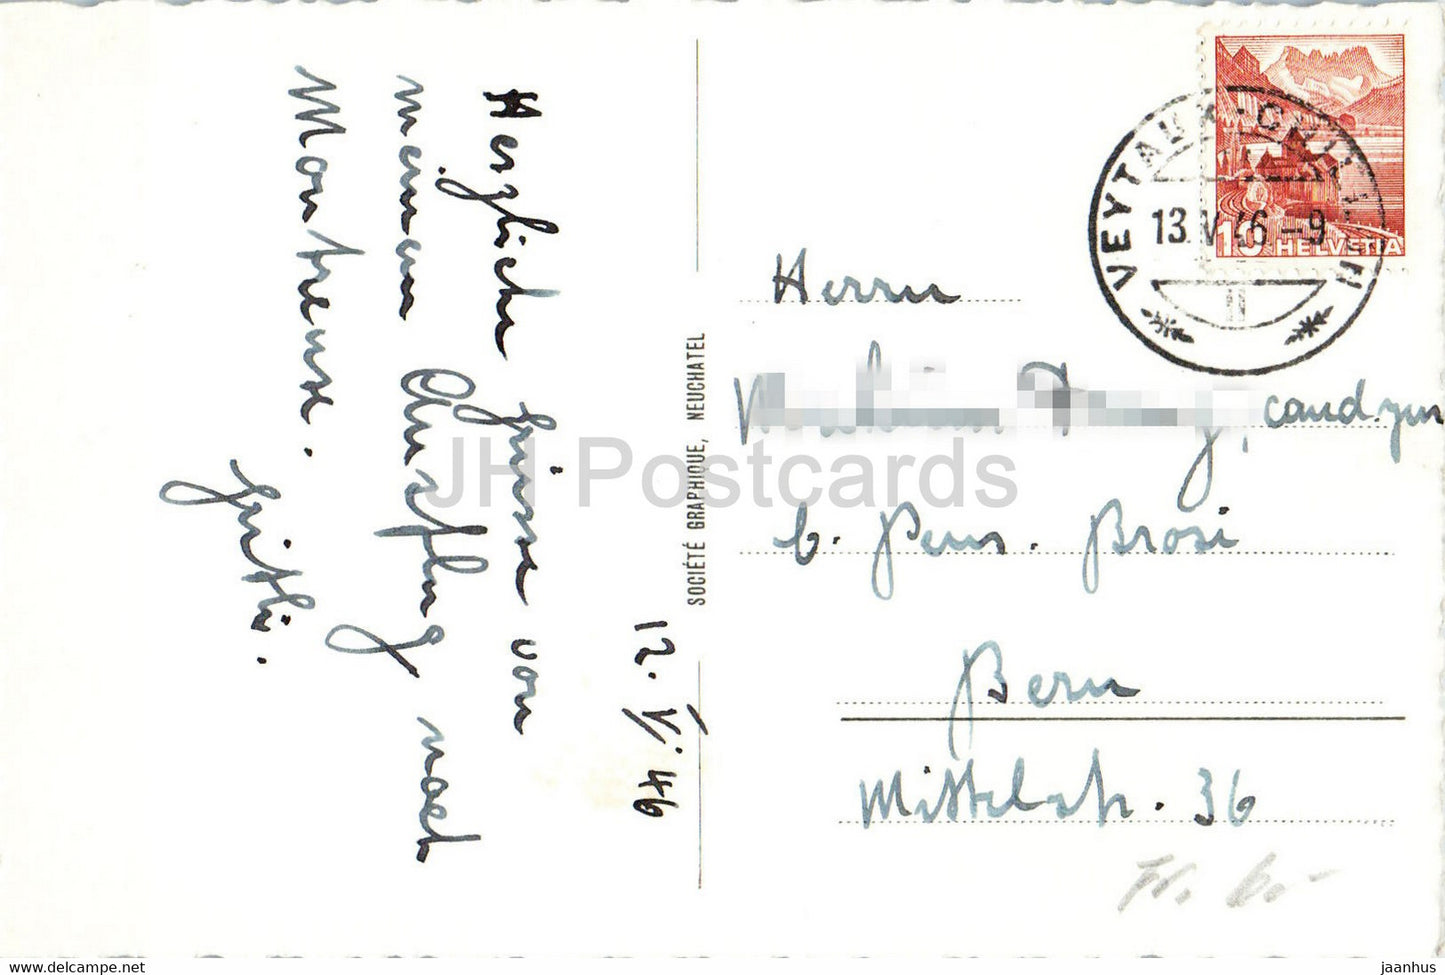 Château de Chillon et Dents du Midi - oiseaux cygne - voilier - château - 7737 1946 - carte postale ancienne - Suisse - d'occasion